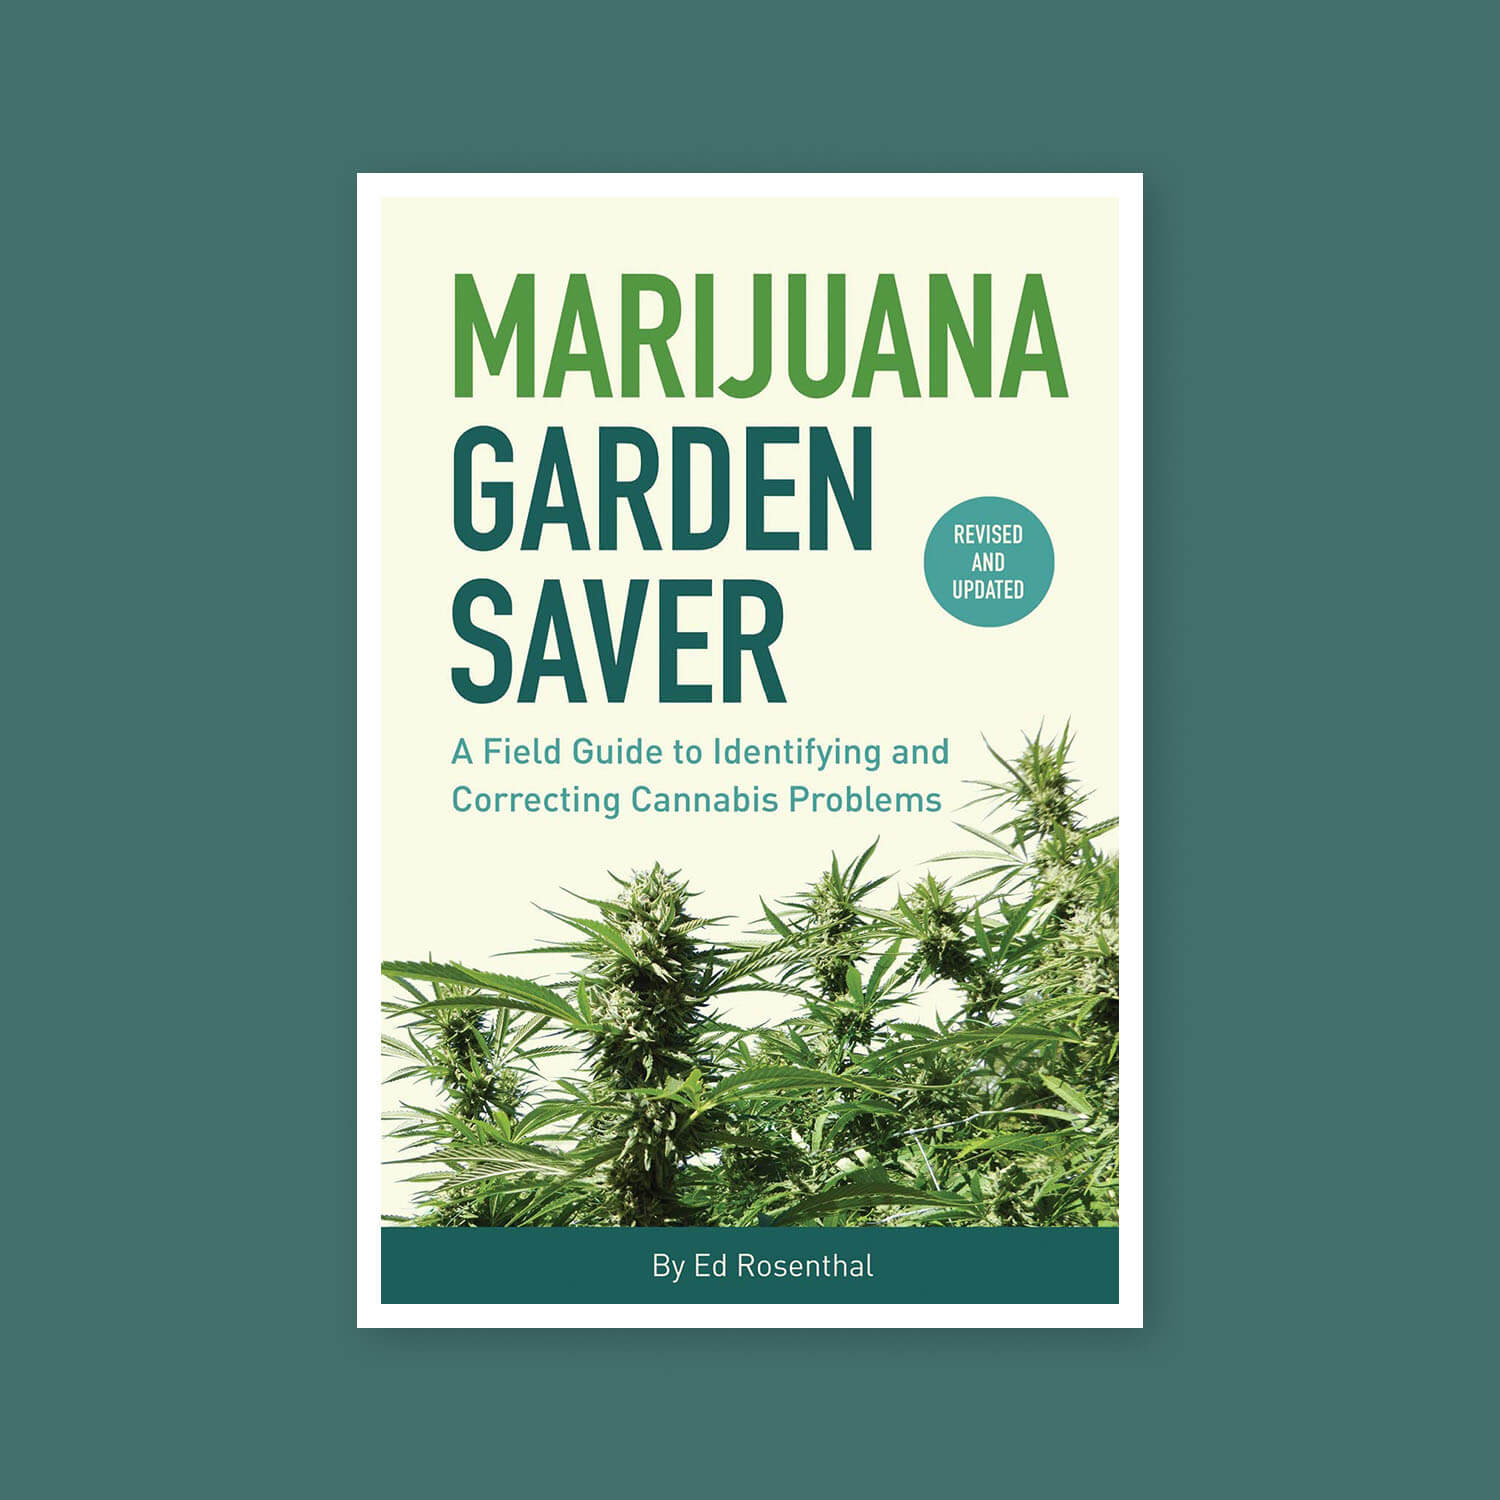 Marijuana garden saver - Goldleaf bookshelf